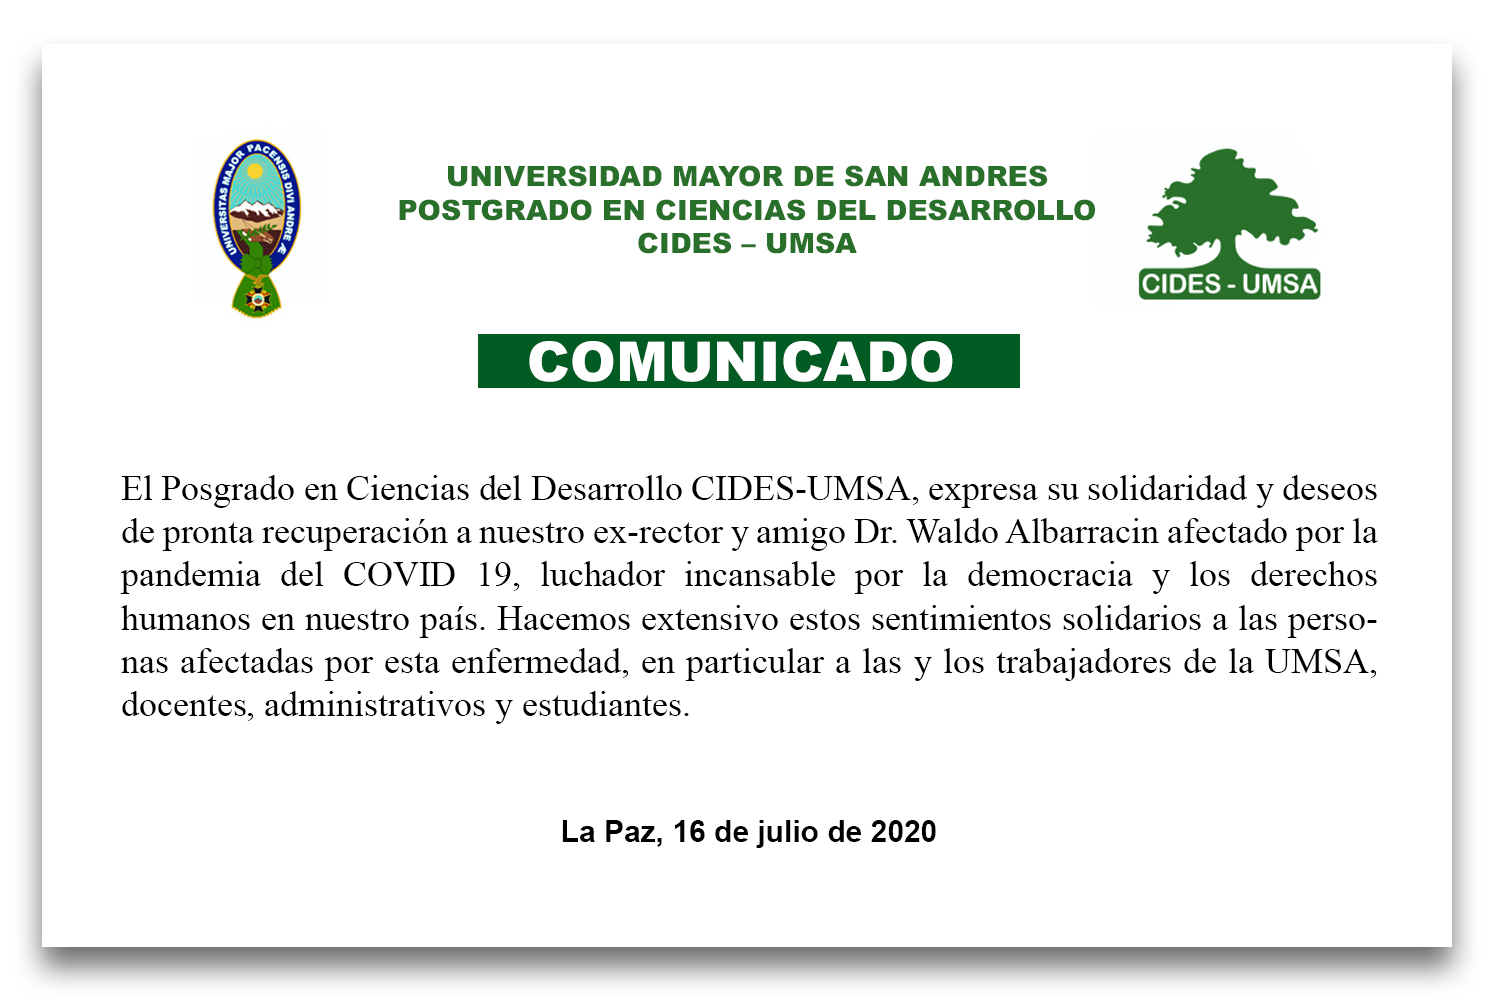 COMUNICADO: Posgrado en Ciencias del Desarrollo CIDES-UMSA